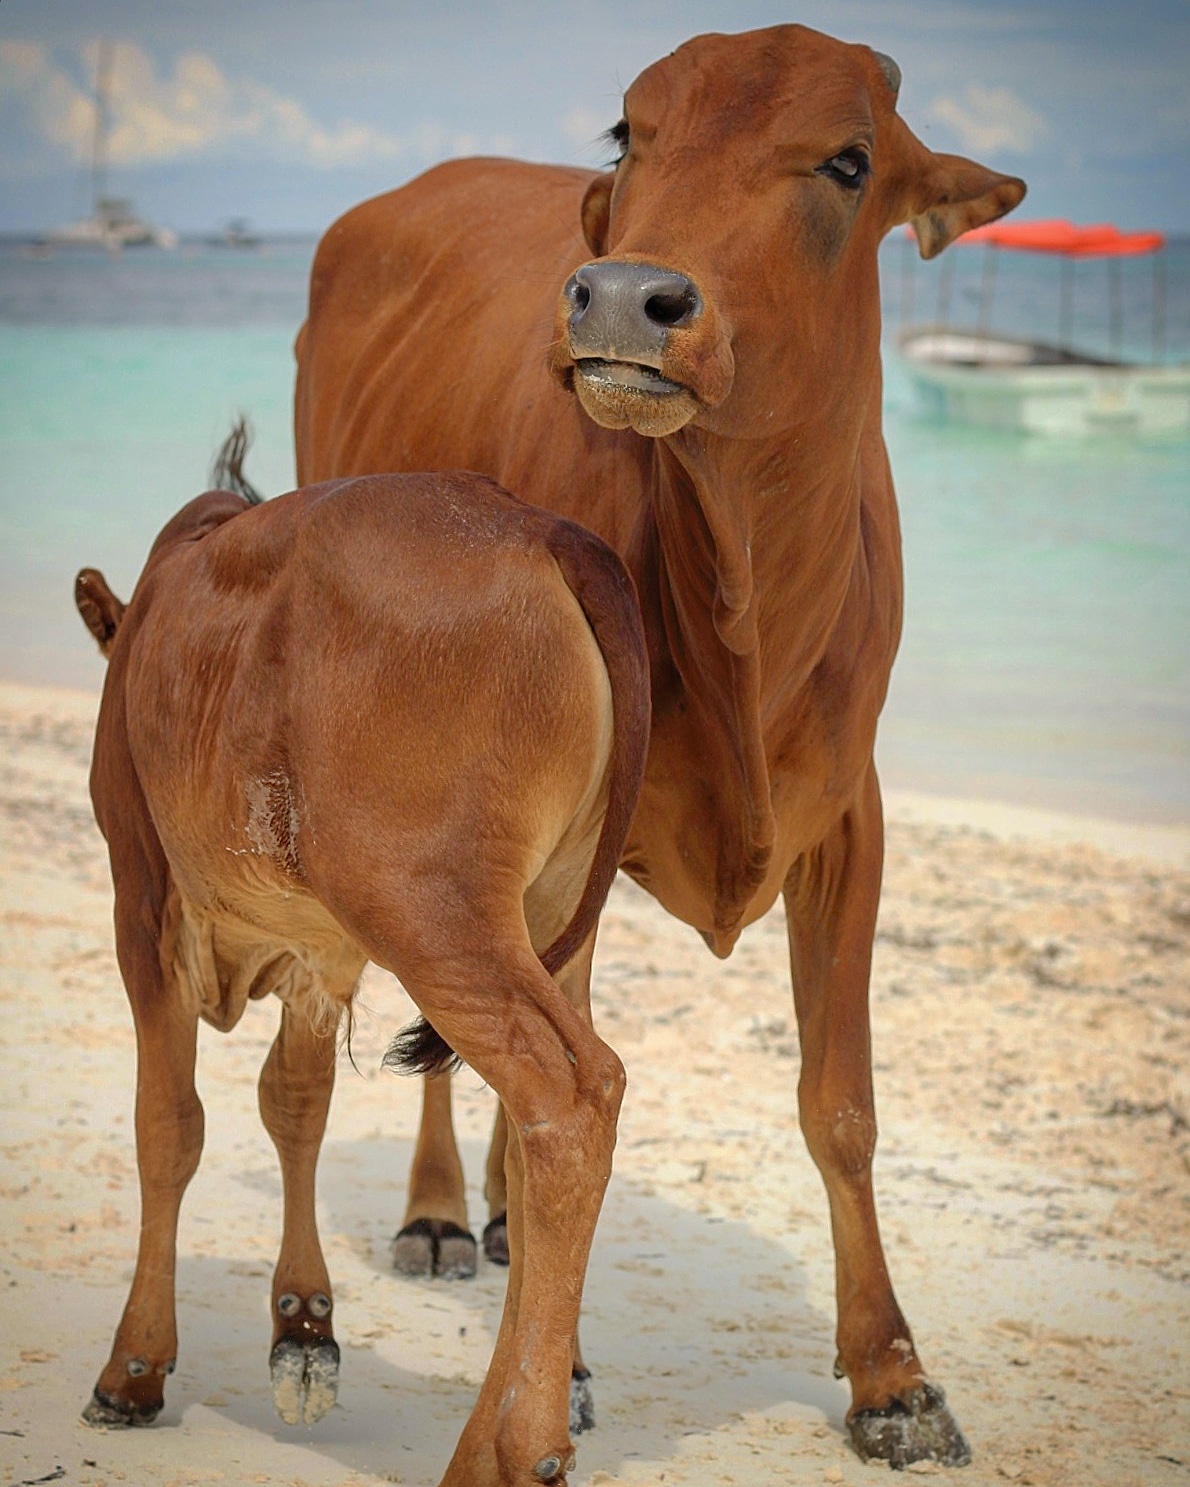 Cows on the beach in Kendwa...